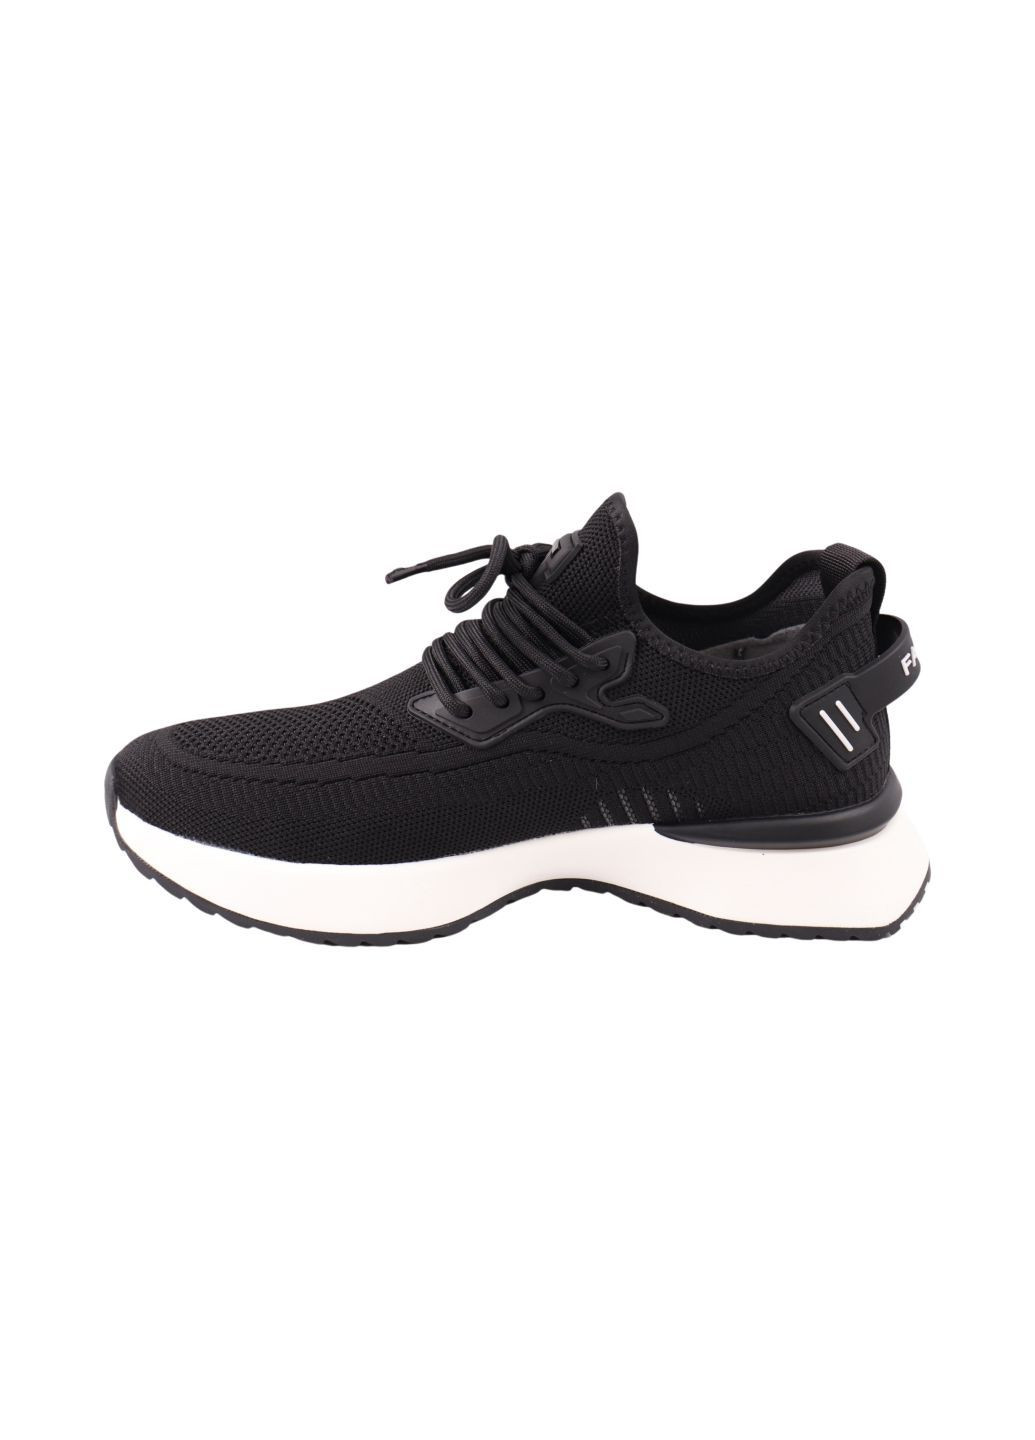 Черные кроссовки мужские черные текстиль Lifexpert 1614-24LK